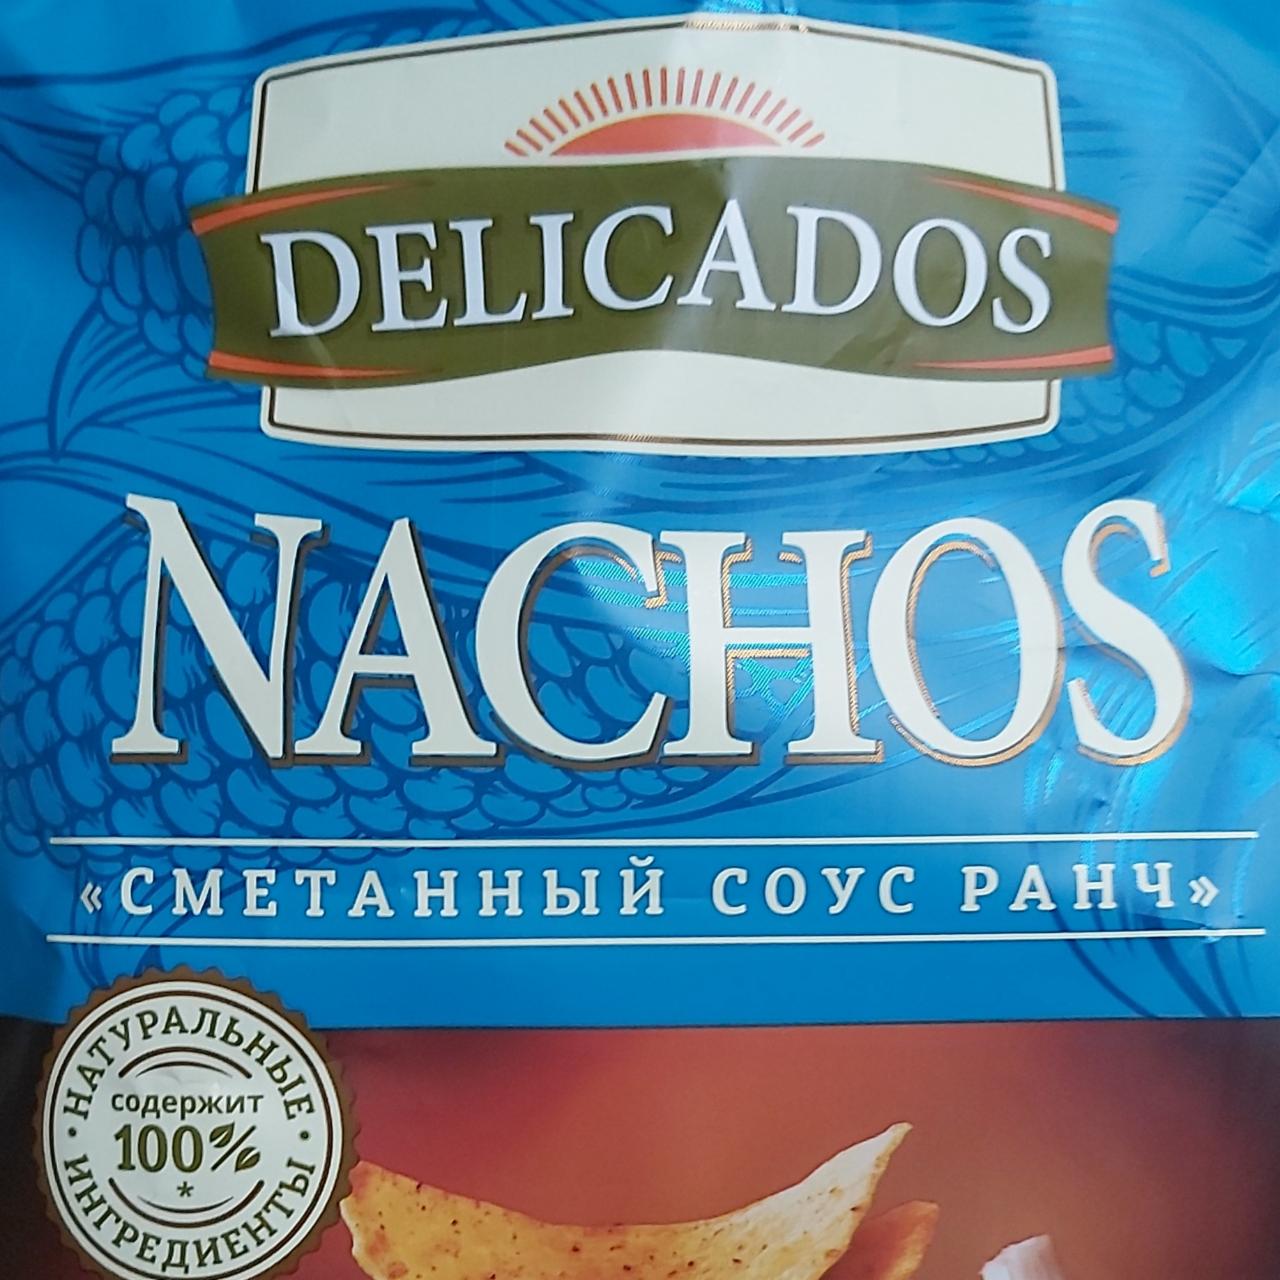 Фото - Nachos сметанный соус ранч Delicados